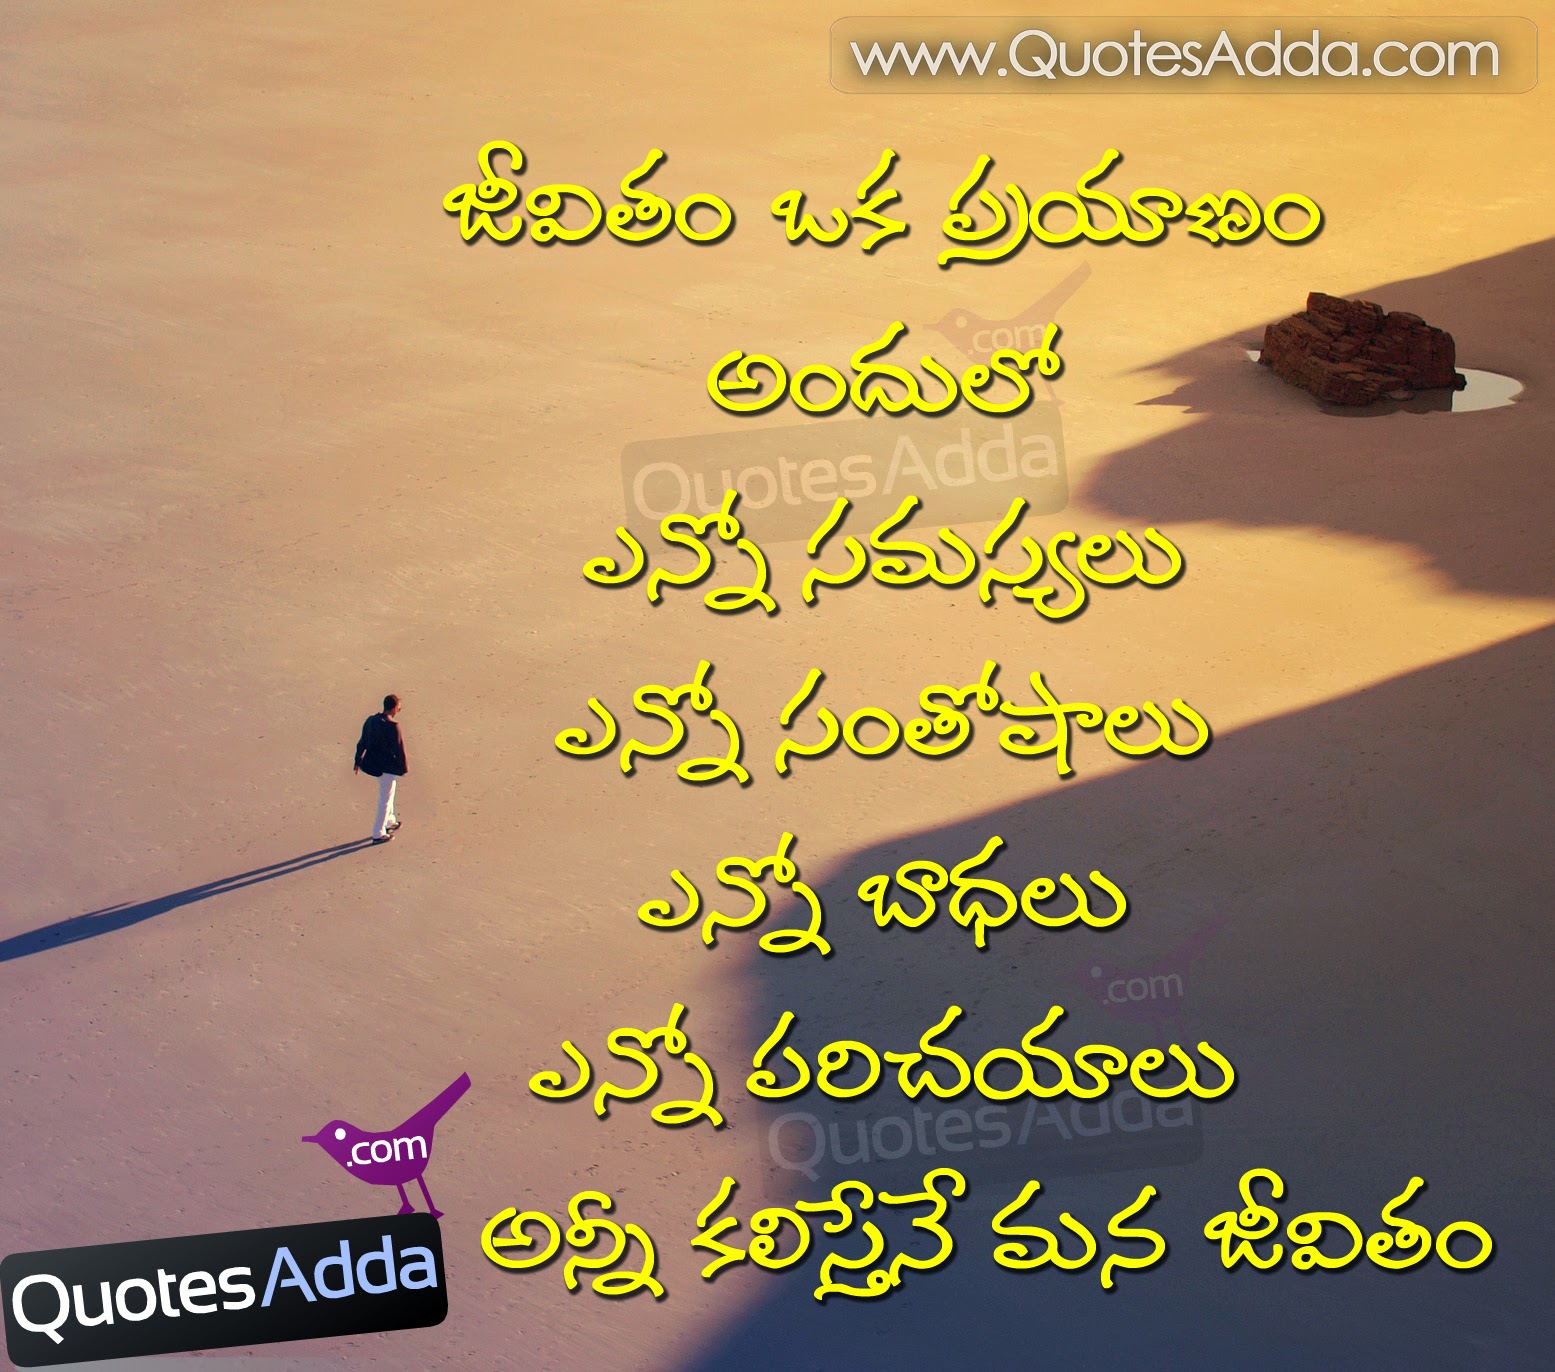 Telugu Quotes On Life. QuotesGram